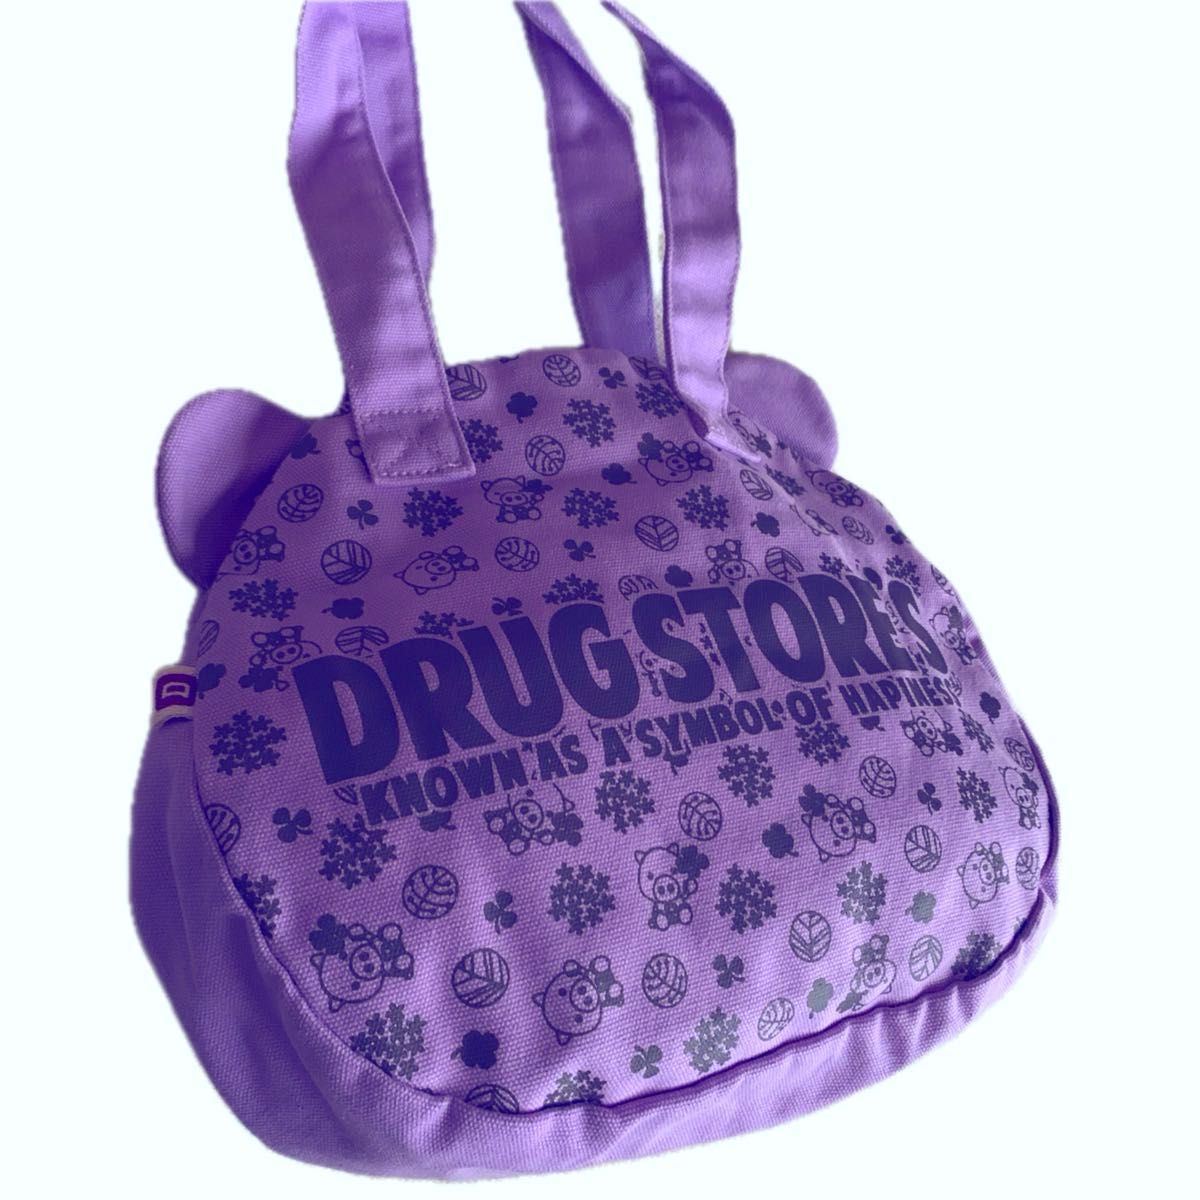 'Drug Store's 新品未使用　タグ付き　キャンパストートバッグ　ドラッグストアーズ エコバッグ　豚の顔　パープル色